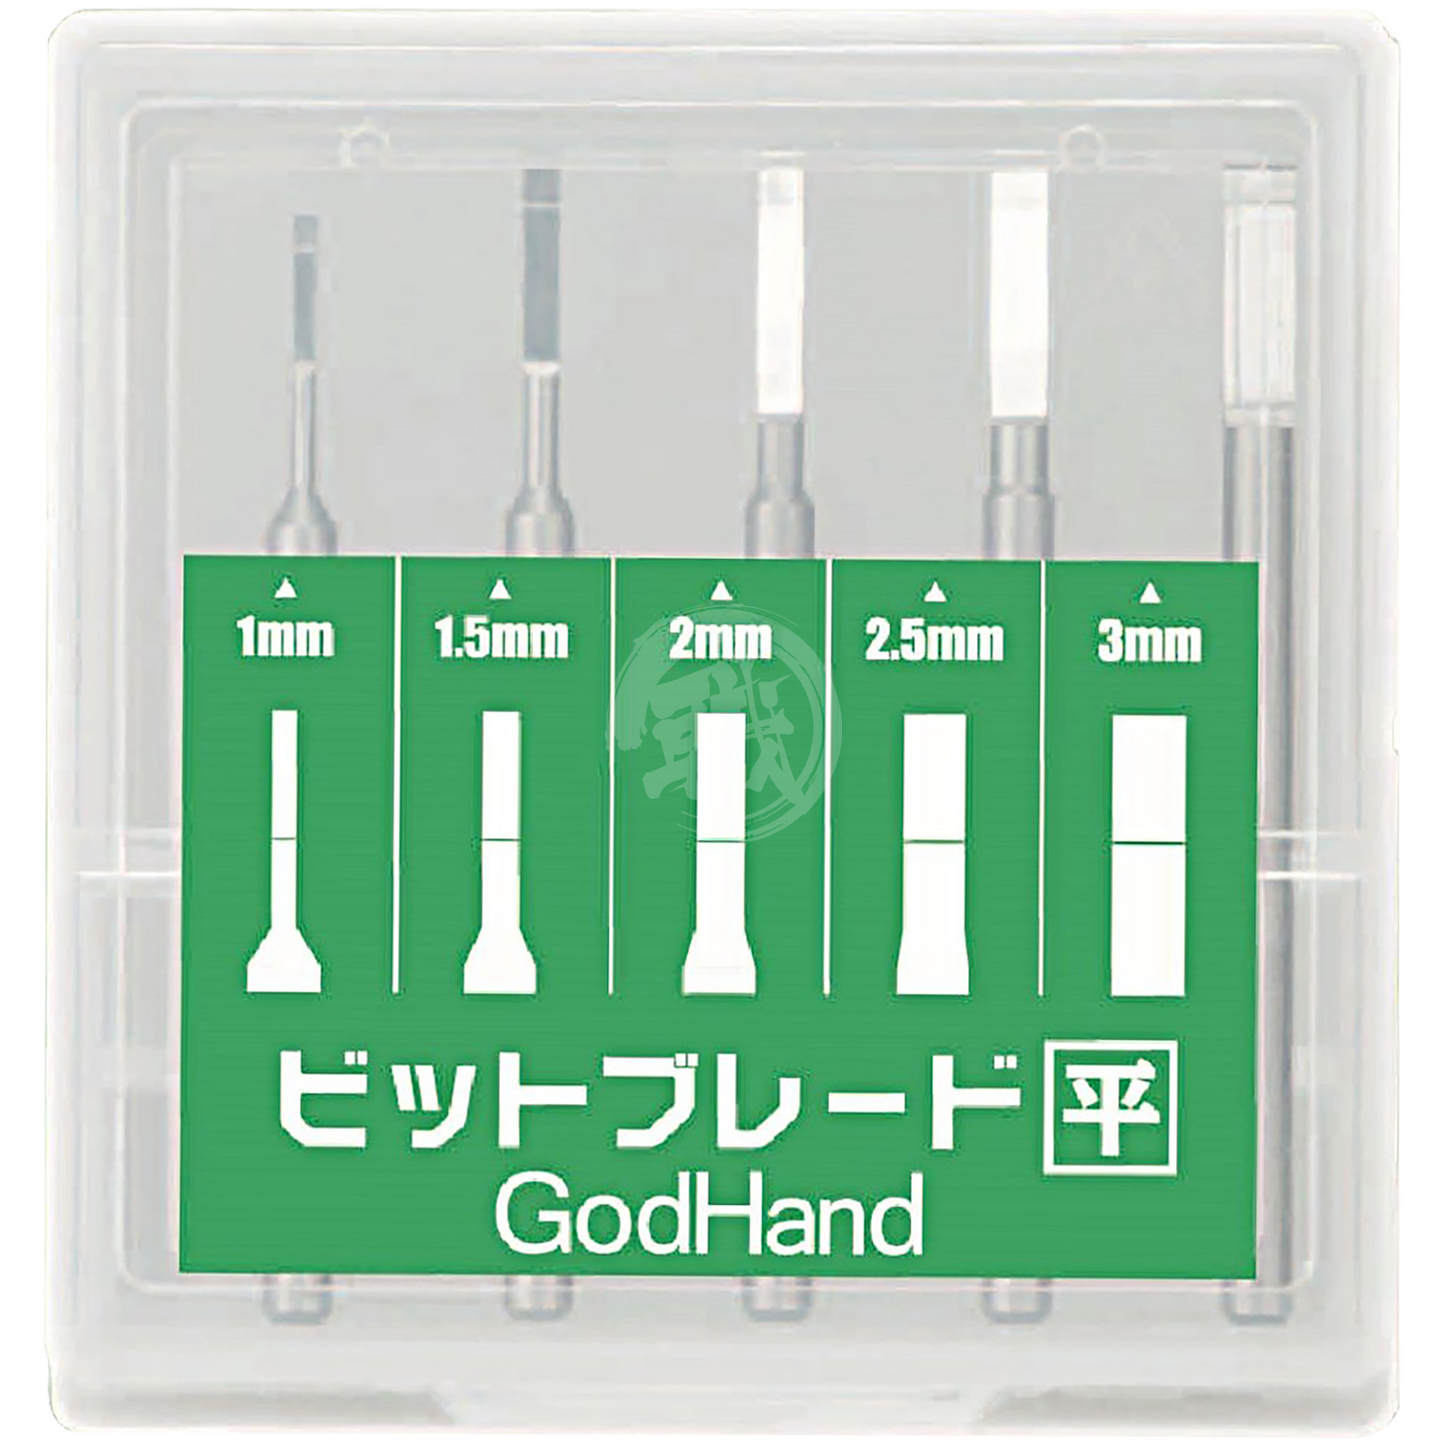 Godhand Tools - Bit Blade Set [Flat] - ShokuninGunpla